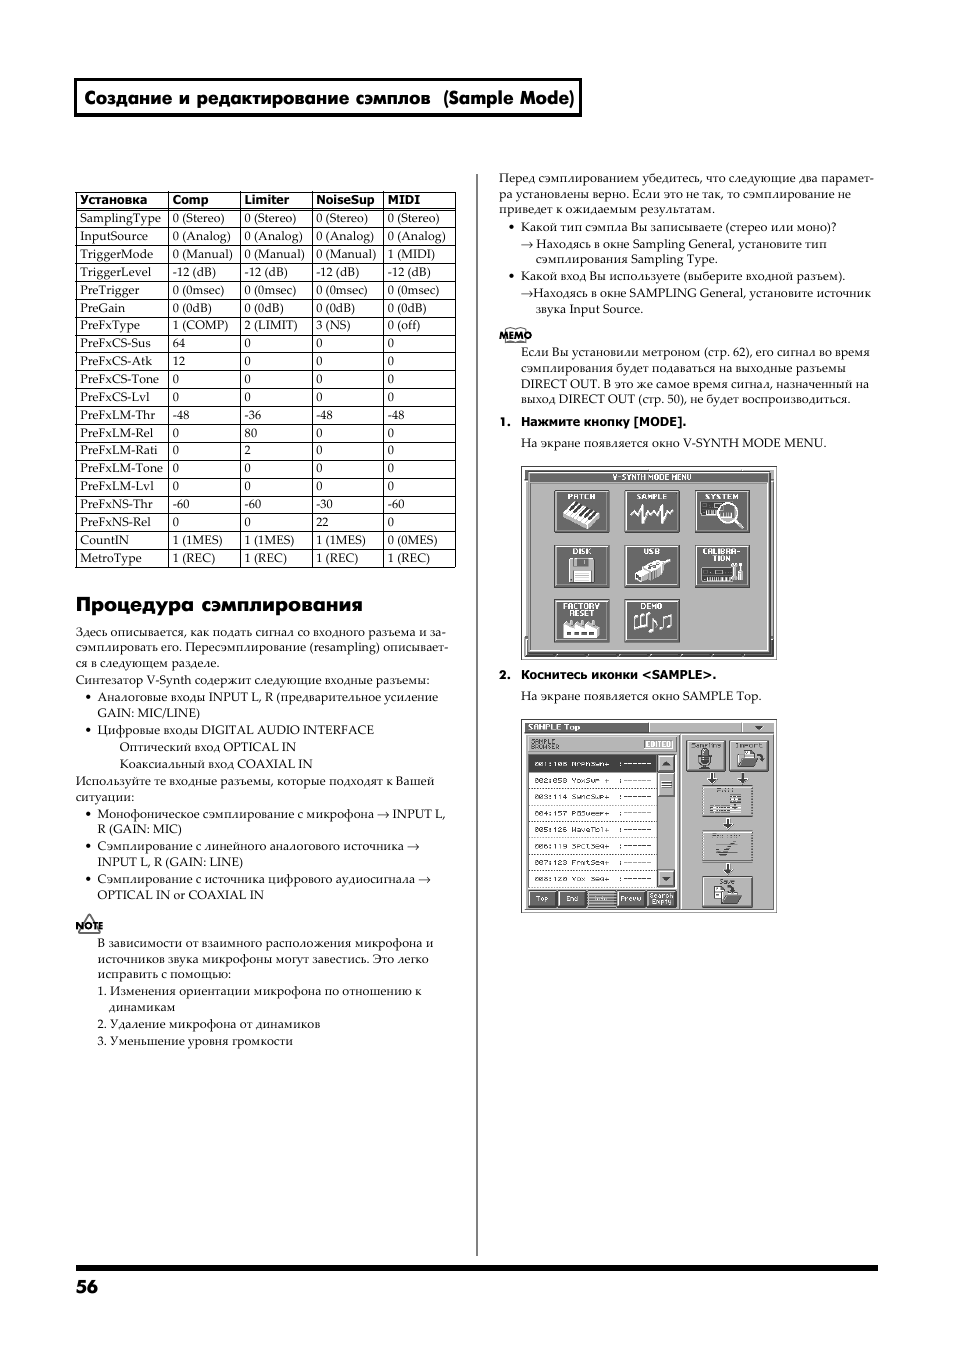 Процедура сэмплирования, 56 создание и редактирование сэмплов (sample mode) | Инструкция по эксплуатации Roland V-Synth | Страница 54 / 176